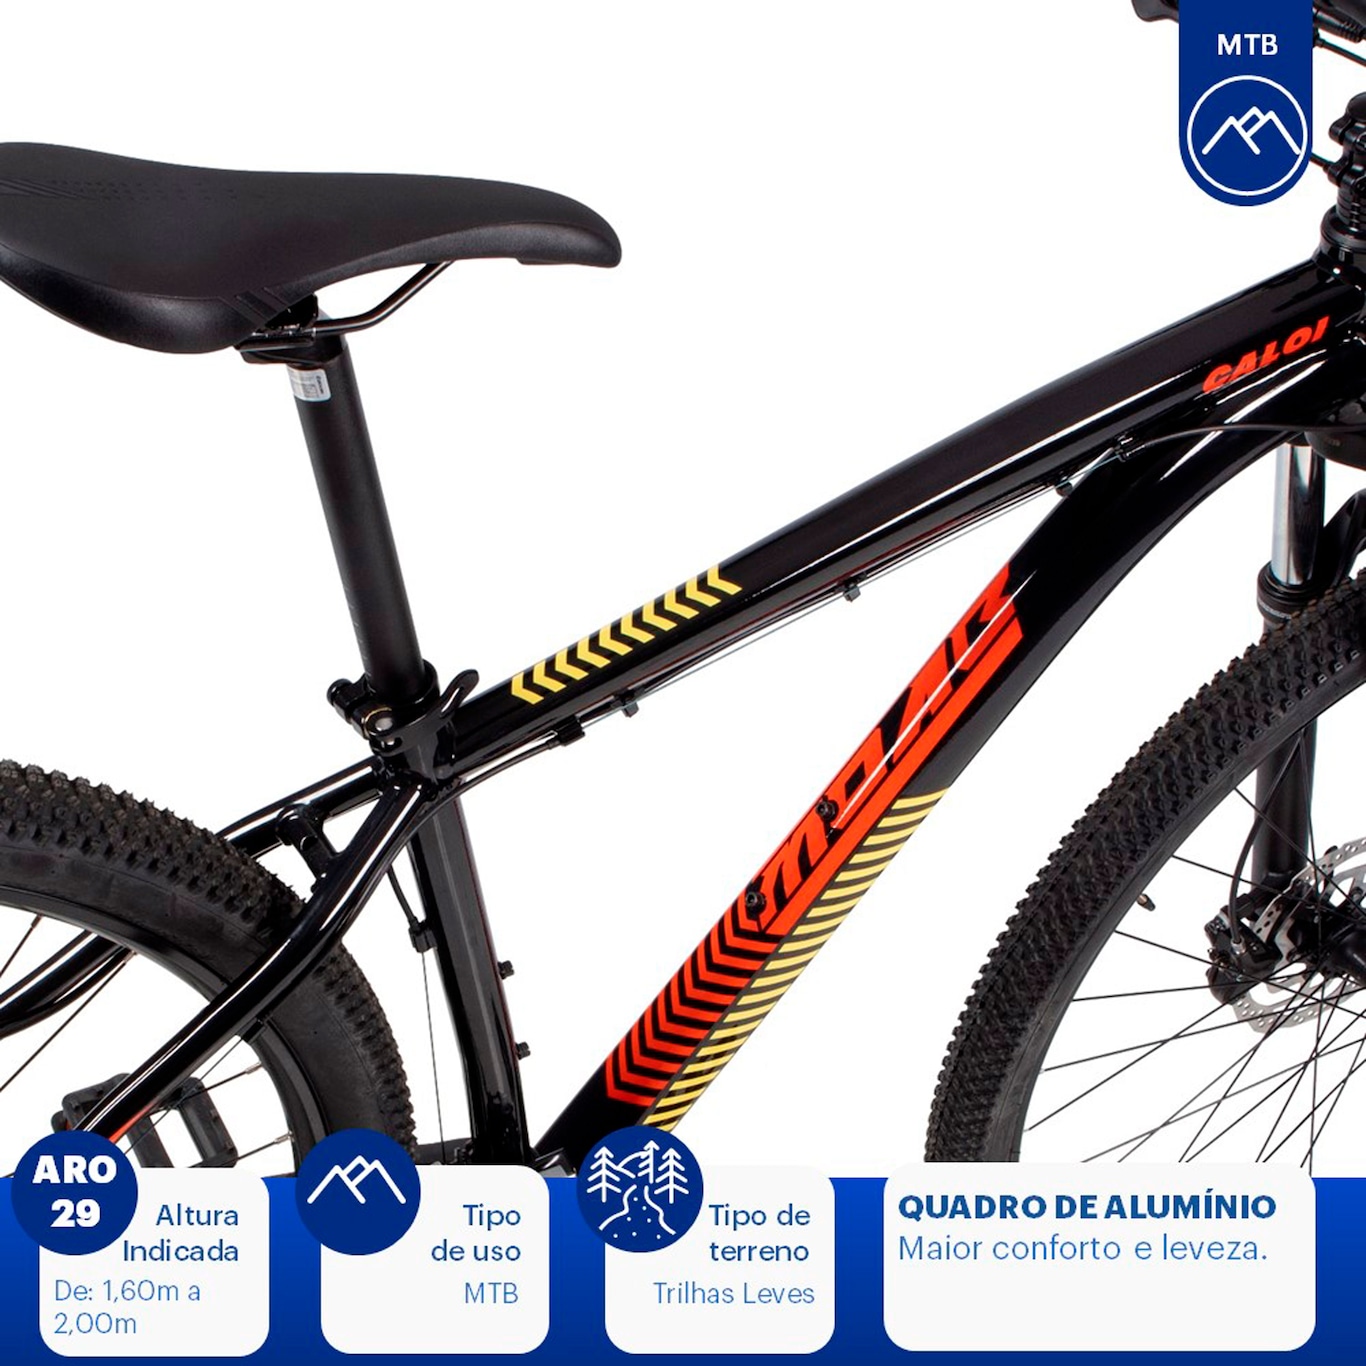 Mountain Bike Caloi Moab Flex - Aro 29 - Freio a Disco Hidráulico - Câmbio  Microshift em Promoção